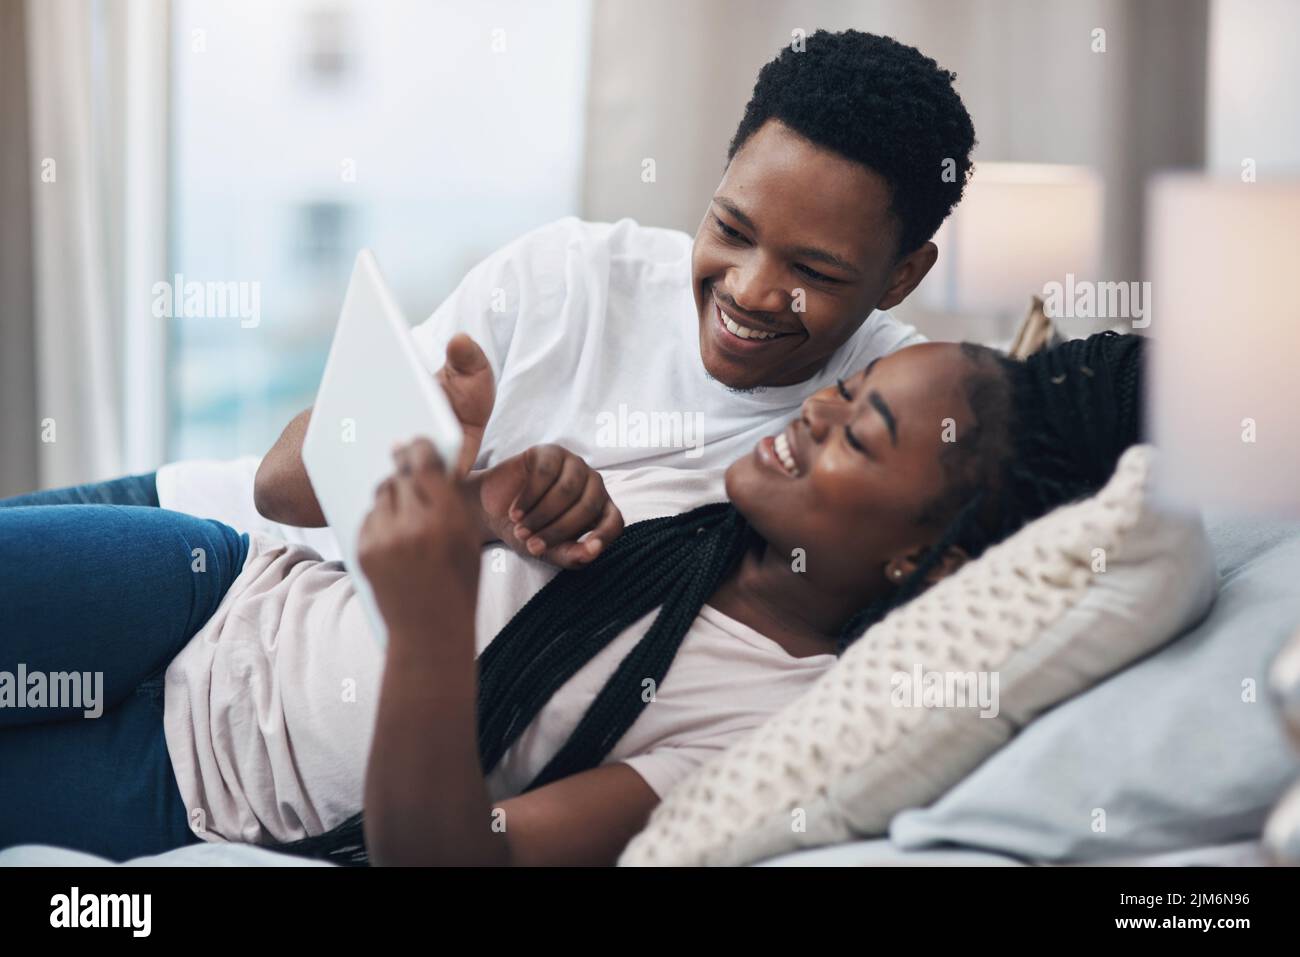 Le plus simple des choses nous rapproche plus que jamais. Un jeune couple utilisant une tablette numérique tout en se relaxant sur son lit à la maison. Banque D'Images